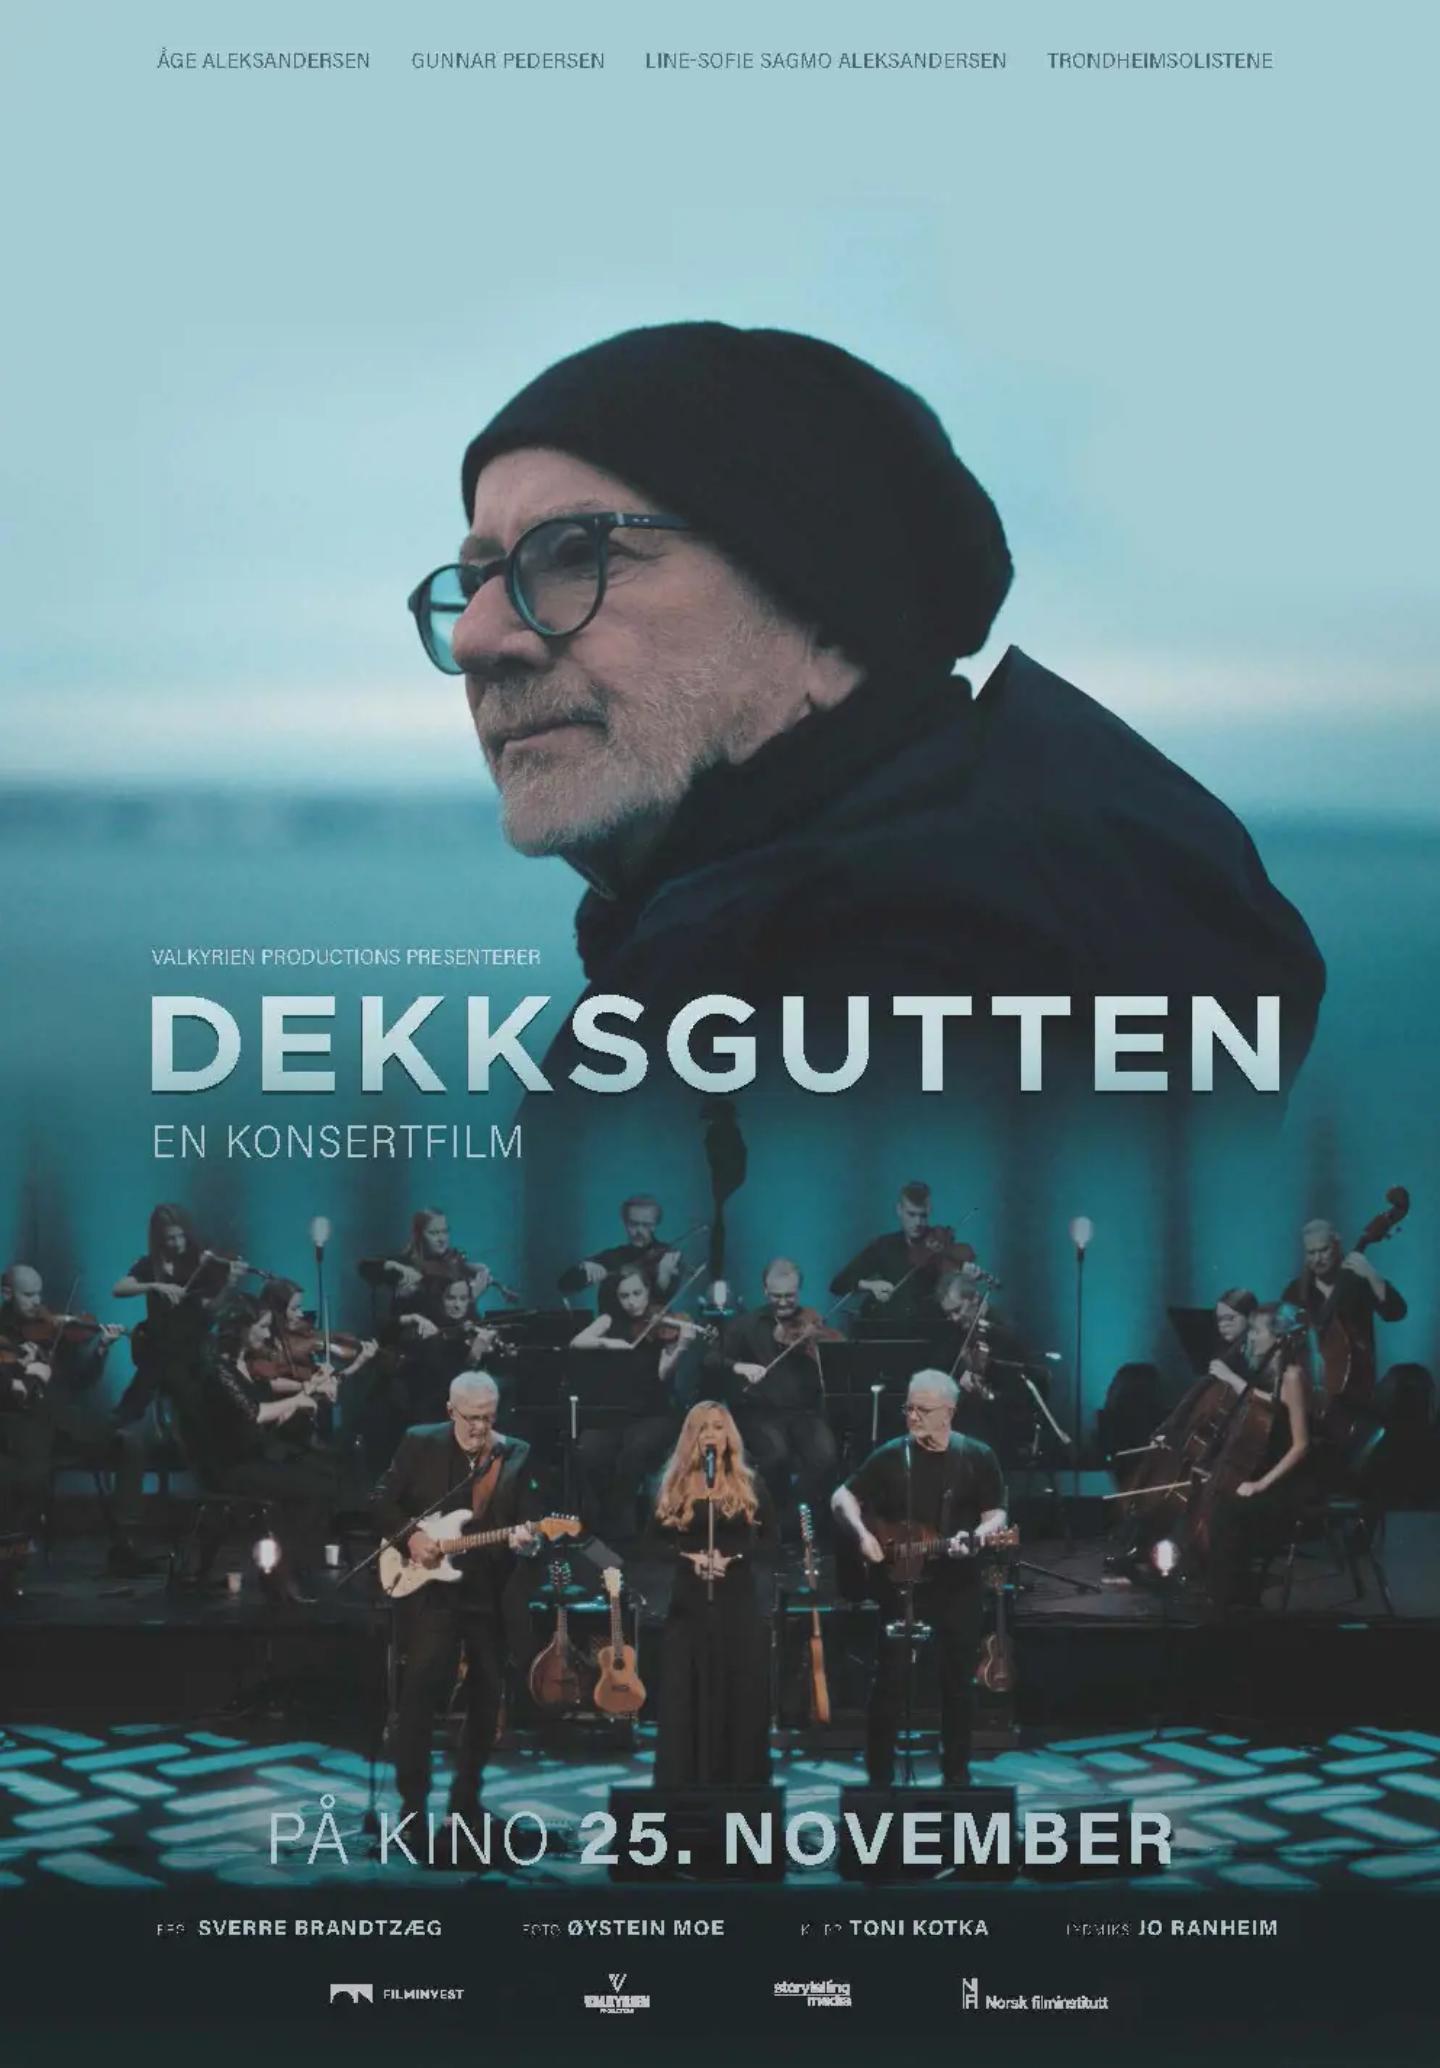 Plakat for 'Dekksgutten - En konsertfilm'